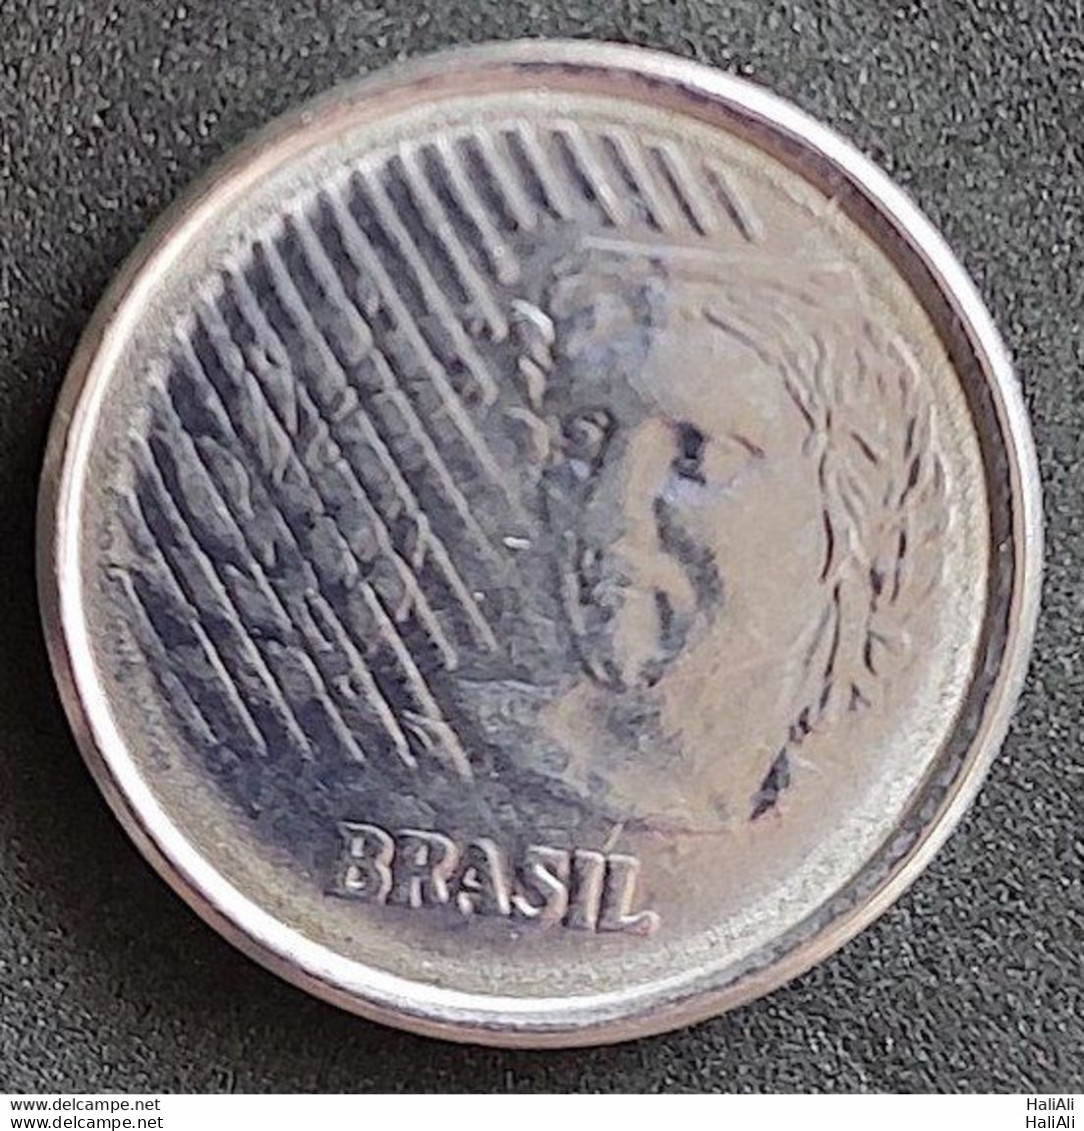 Coin Brazil Moeda Brasil 1997 1 Centavo 3 - Brasil